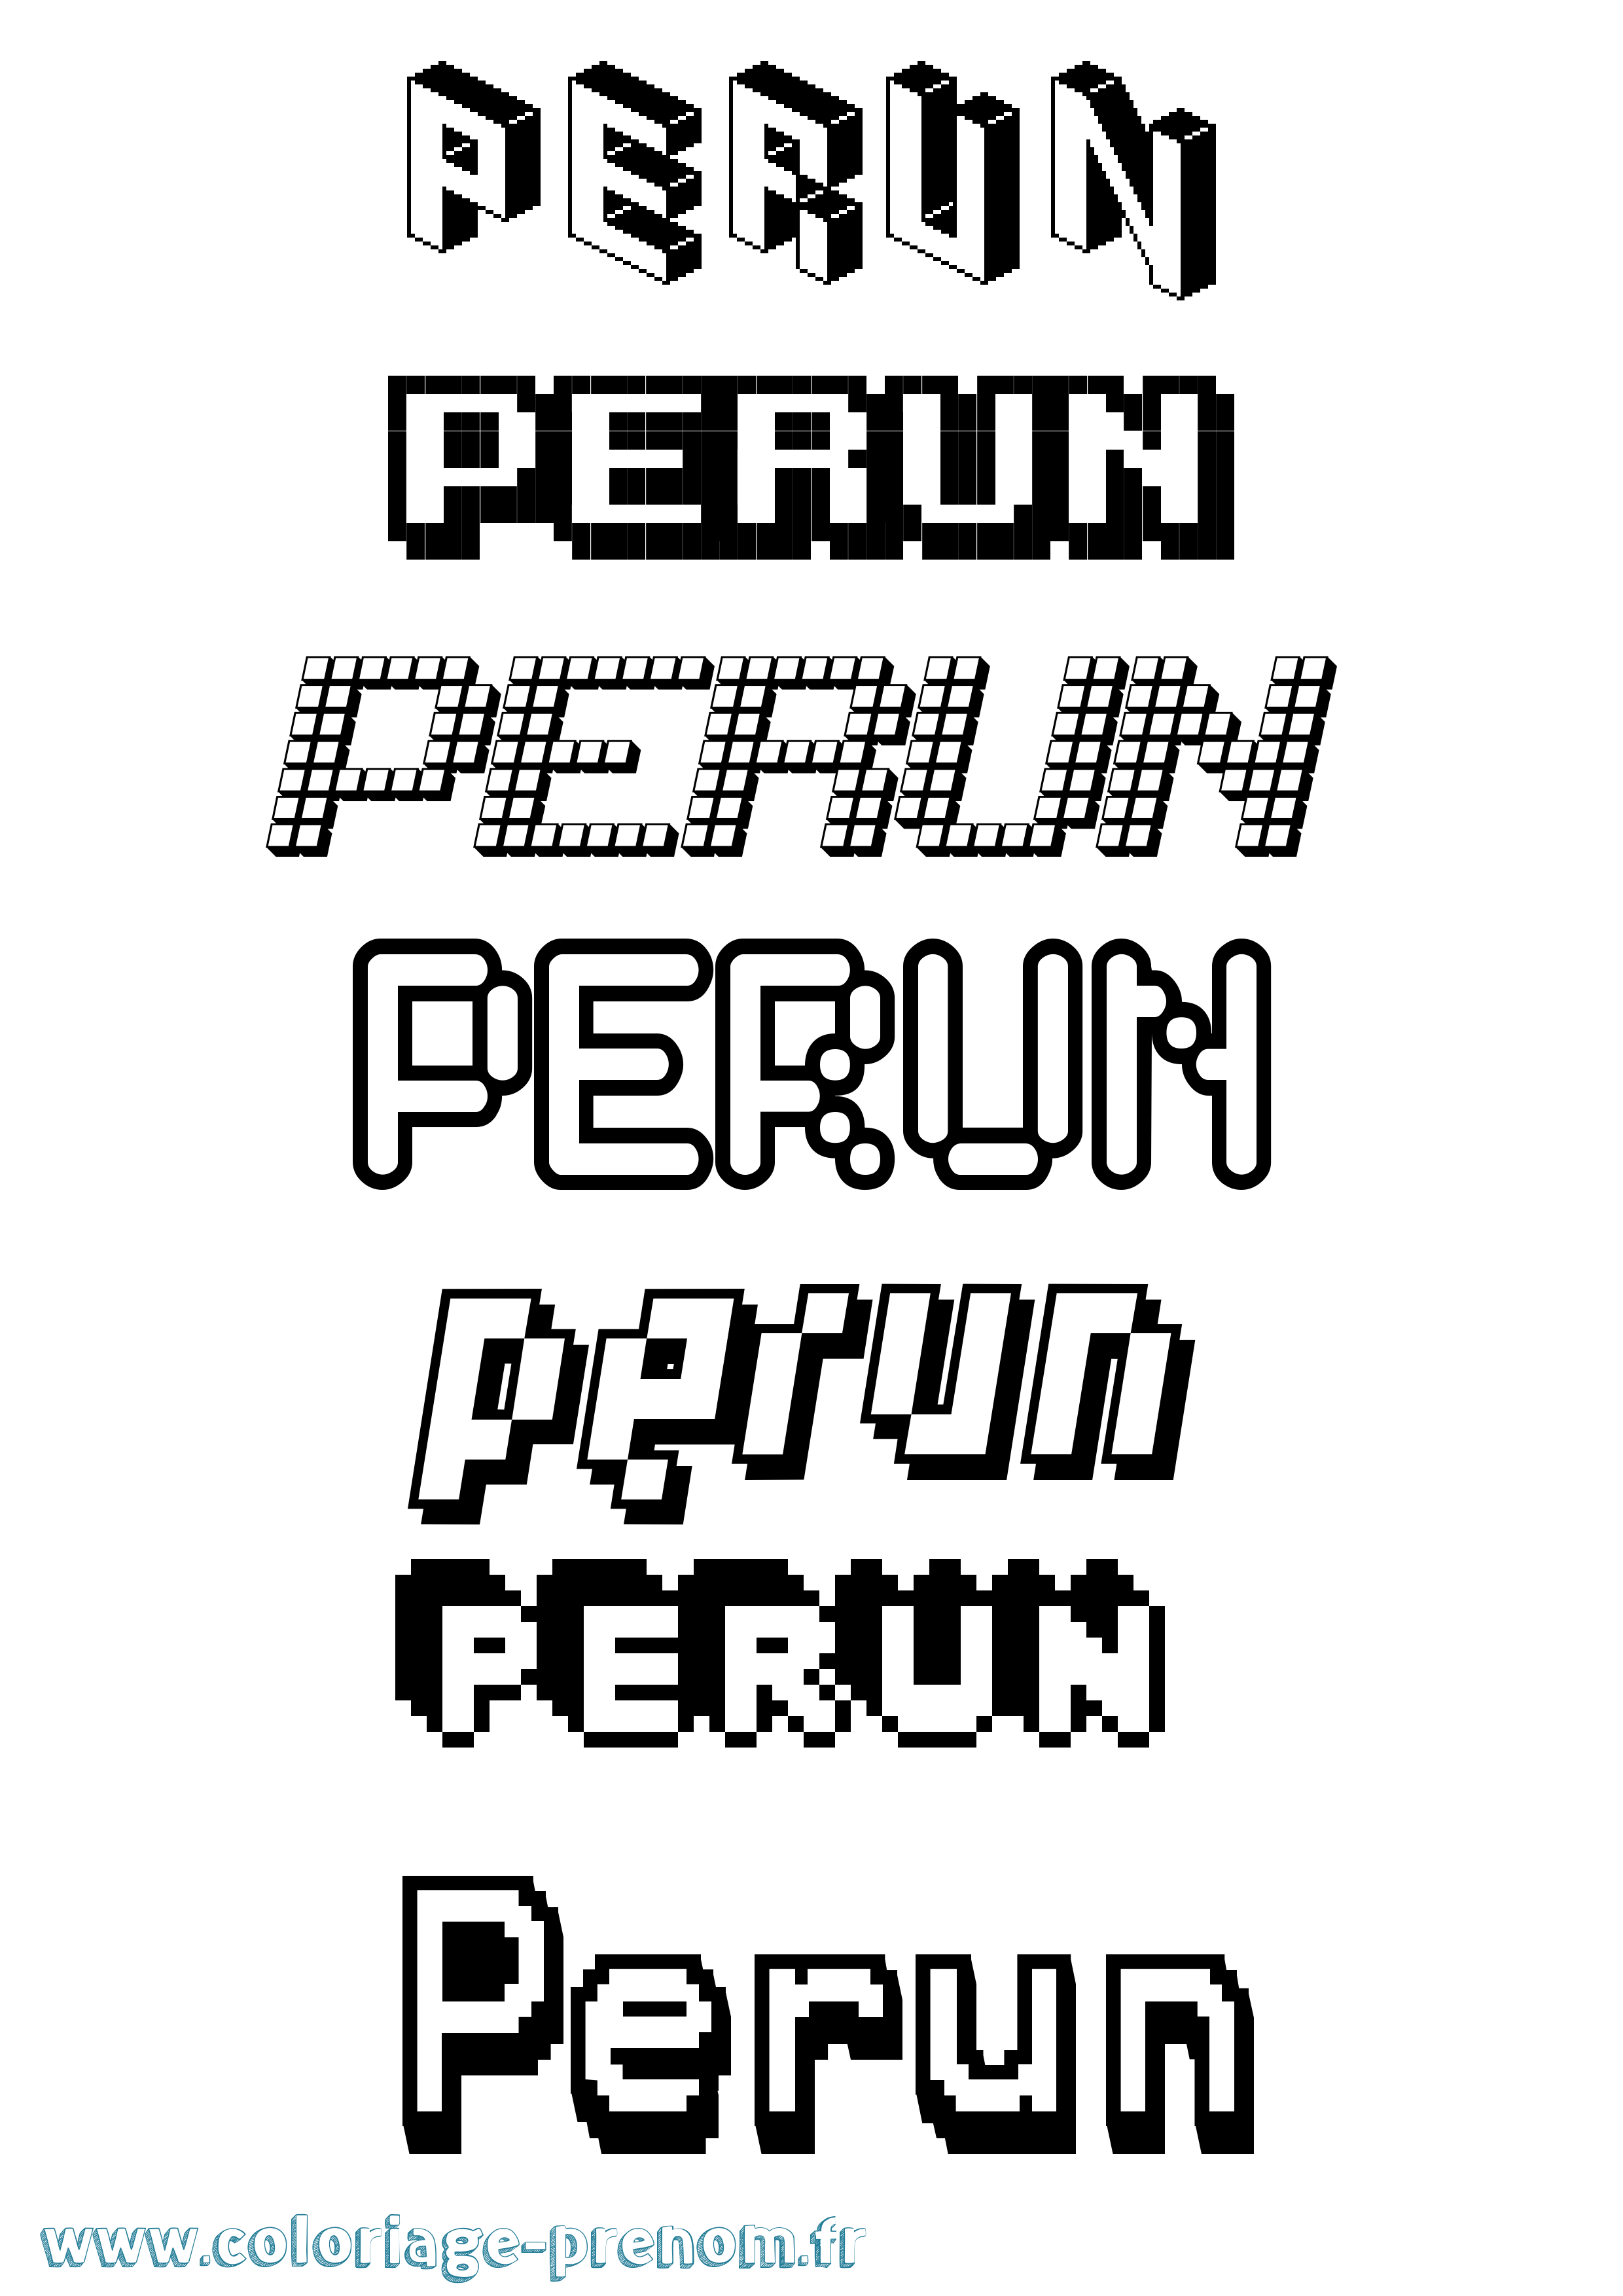 Coloriage prénom Perun Pixel